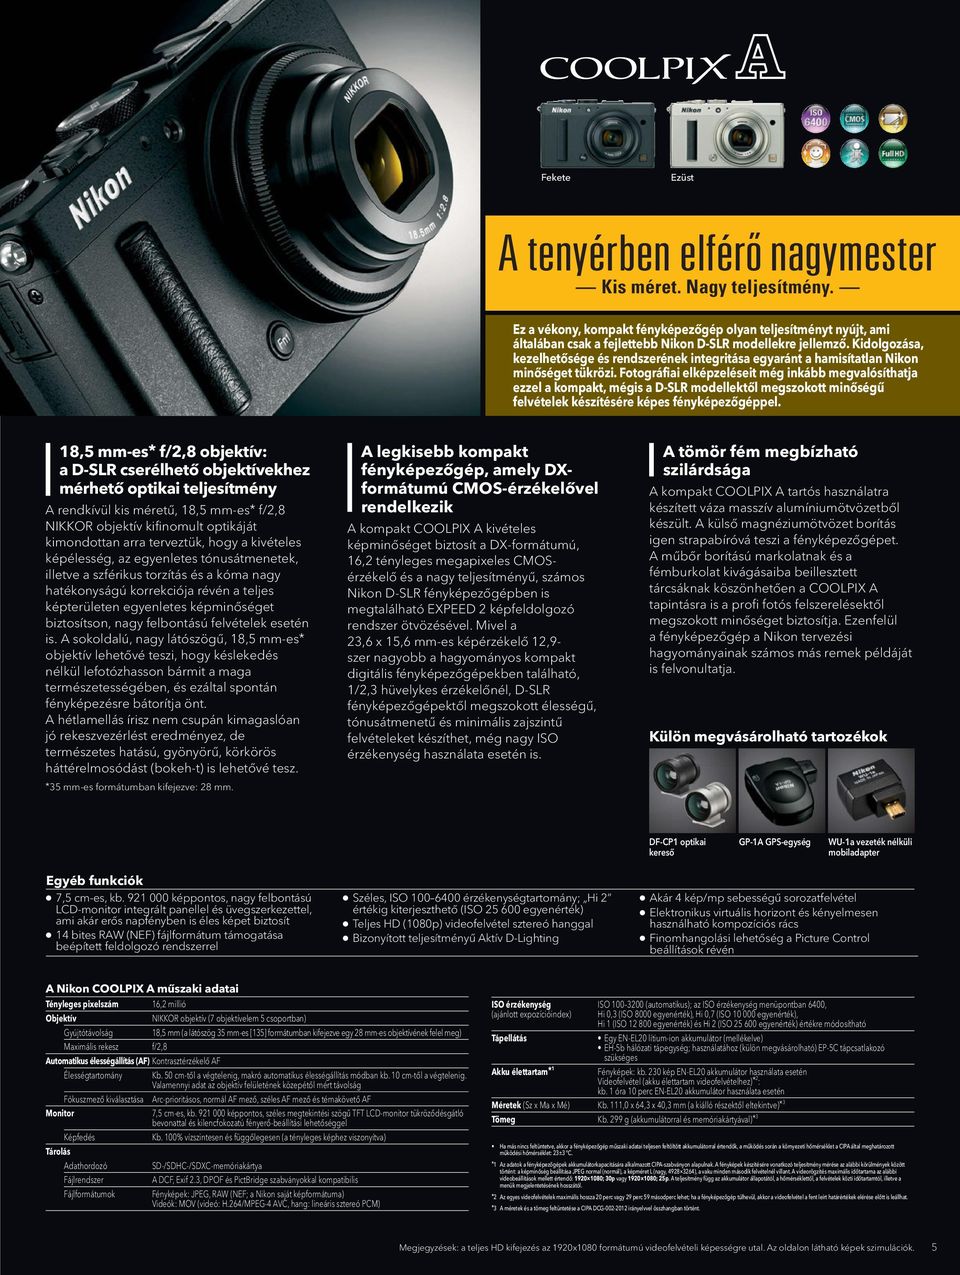 modellekre models. jellemző. Its craftsmanship, Kidolgozása, kezelhetősége és rendszerének integritása egyaránt a hamisítatlan Nikon operability and system integrity are all authentically Nikon.